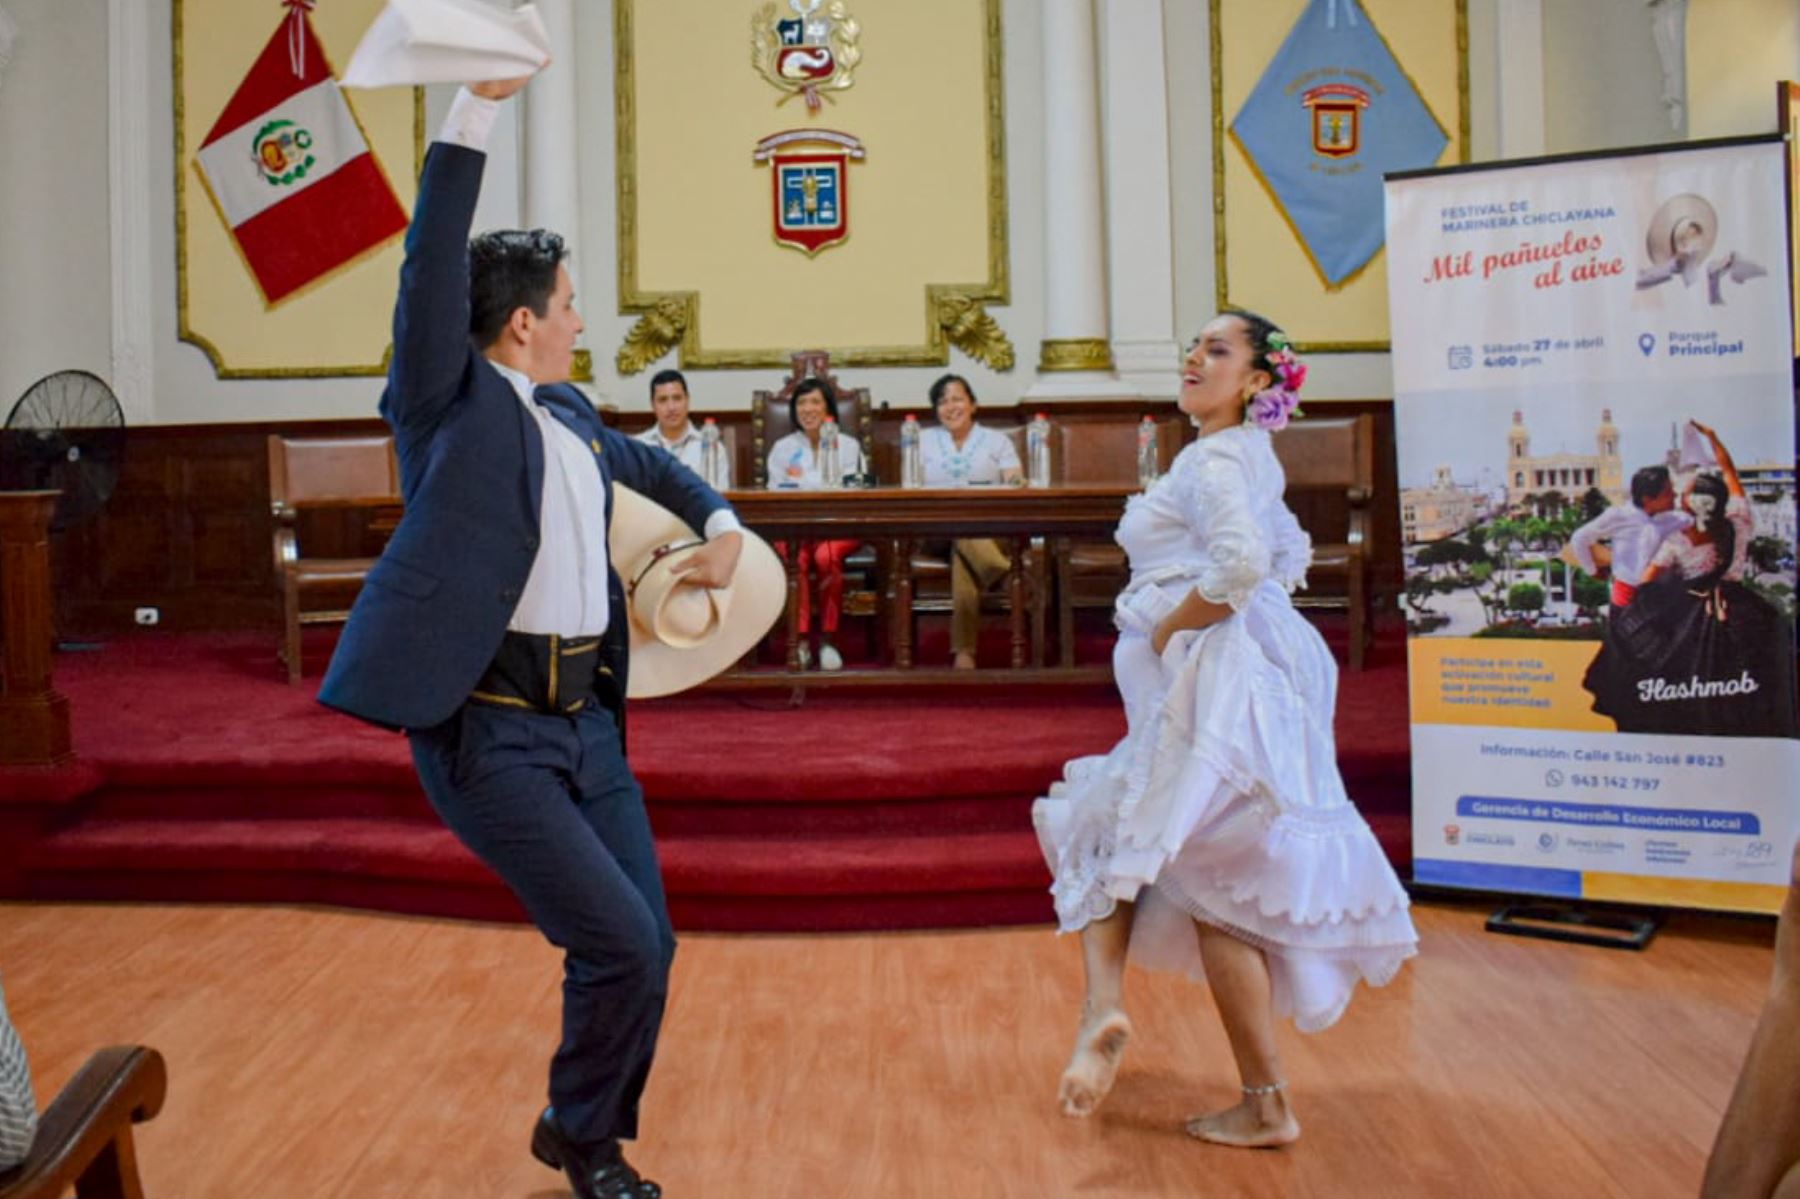 La marinera es una danza tradicional declarada Patrimonio Cultural de la Nación en 1986. Foto: ANDINA/Difusión